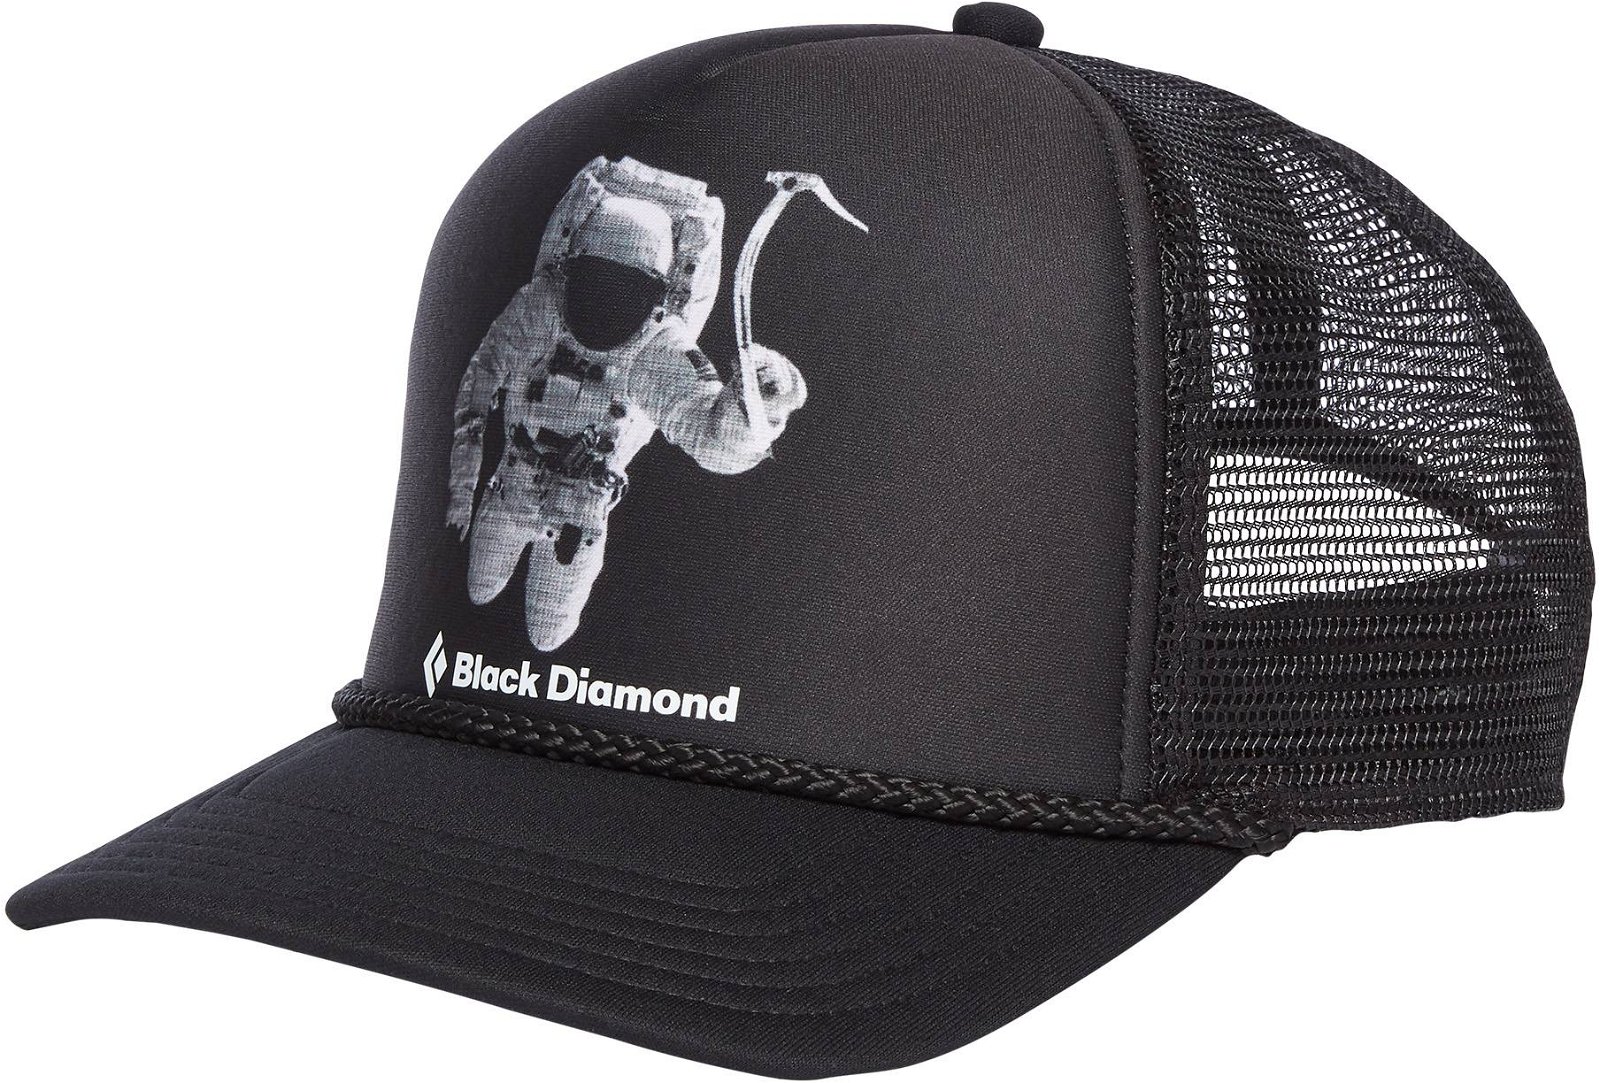 Bilde av Black Diamond Flat Bill Trucker Hatspaceshot Print